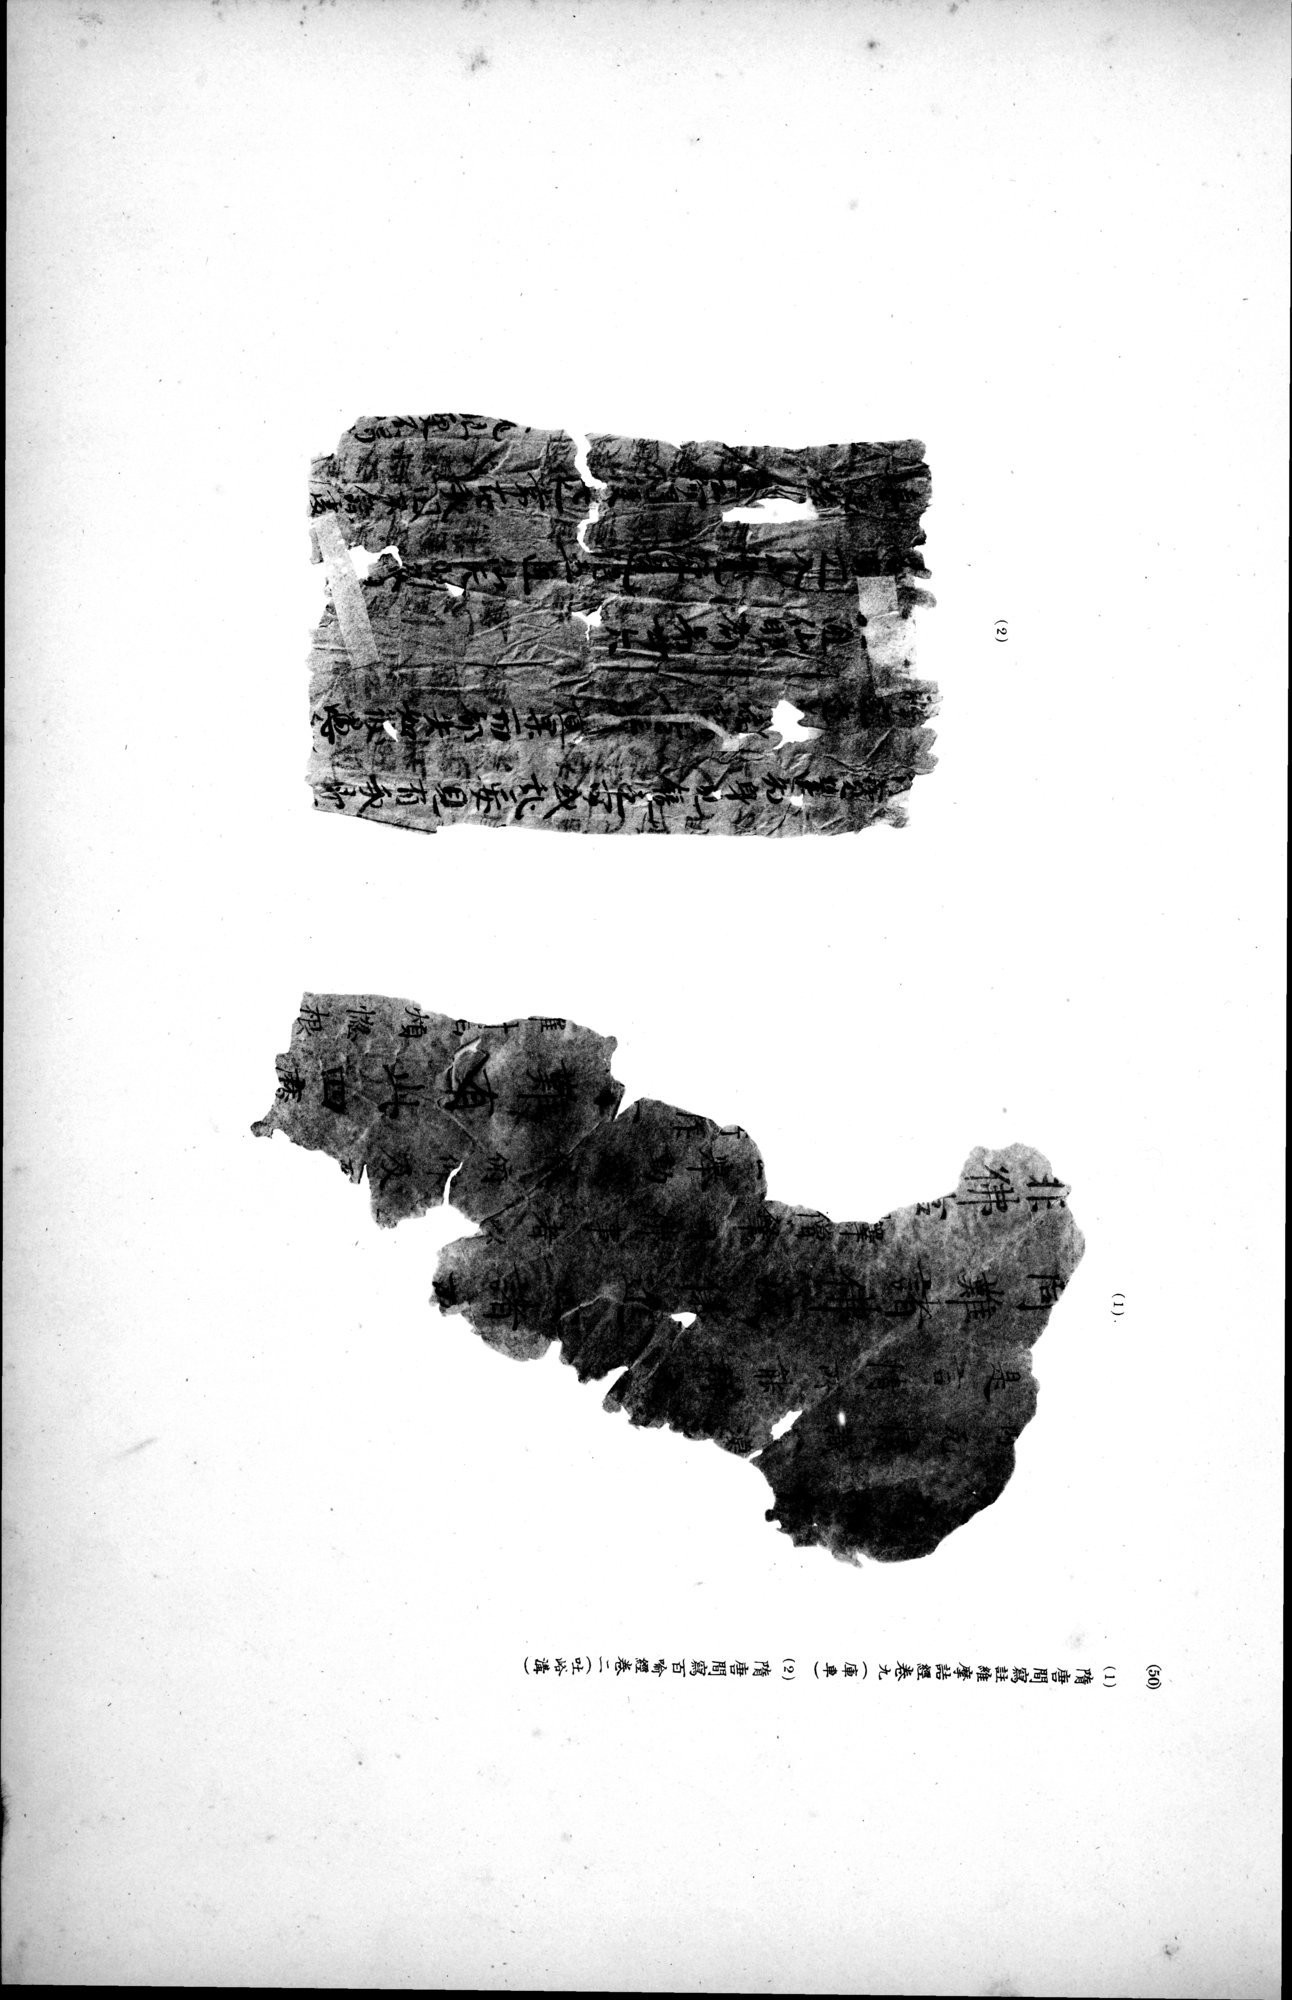 西域考古図譜 : vol.2 / Page 115 (Grayscale High Resolution Image)